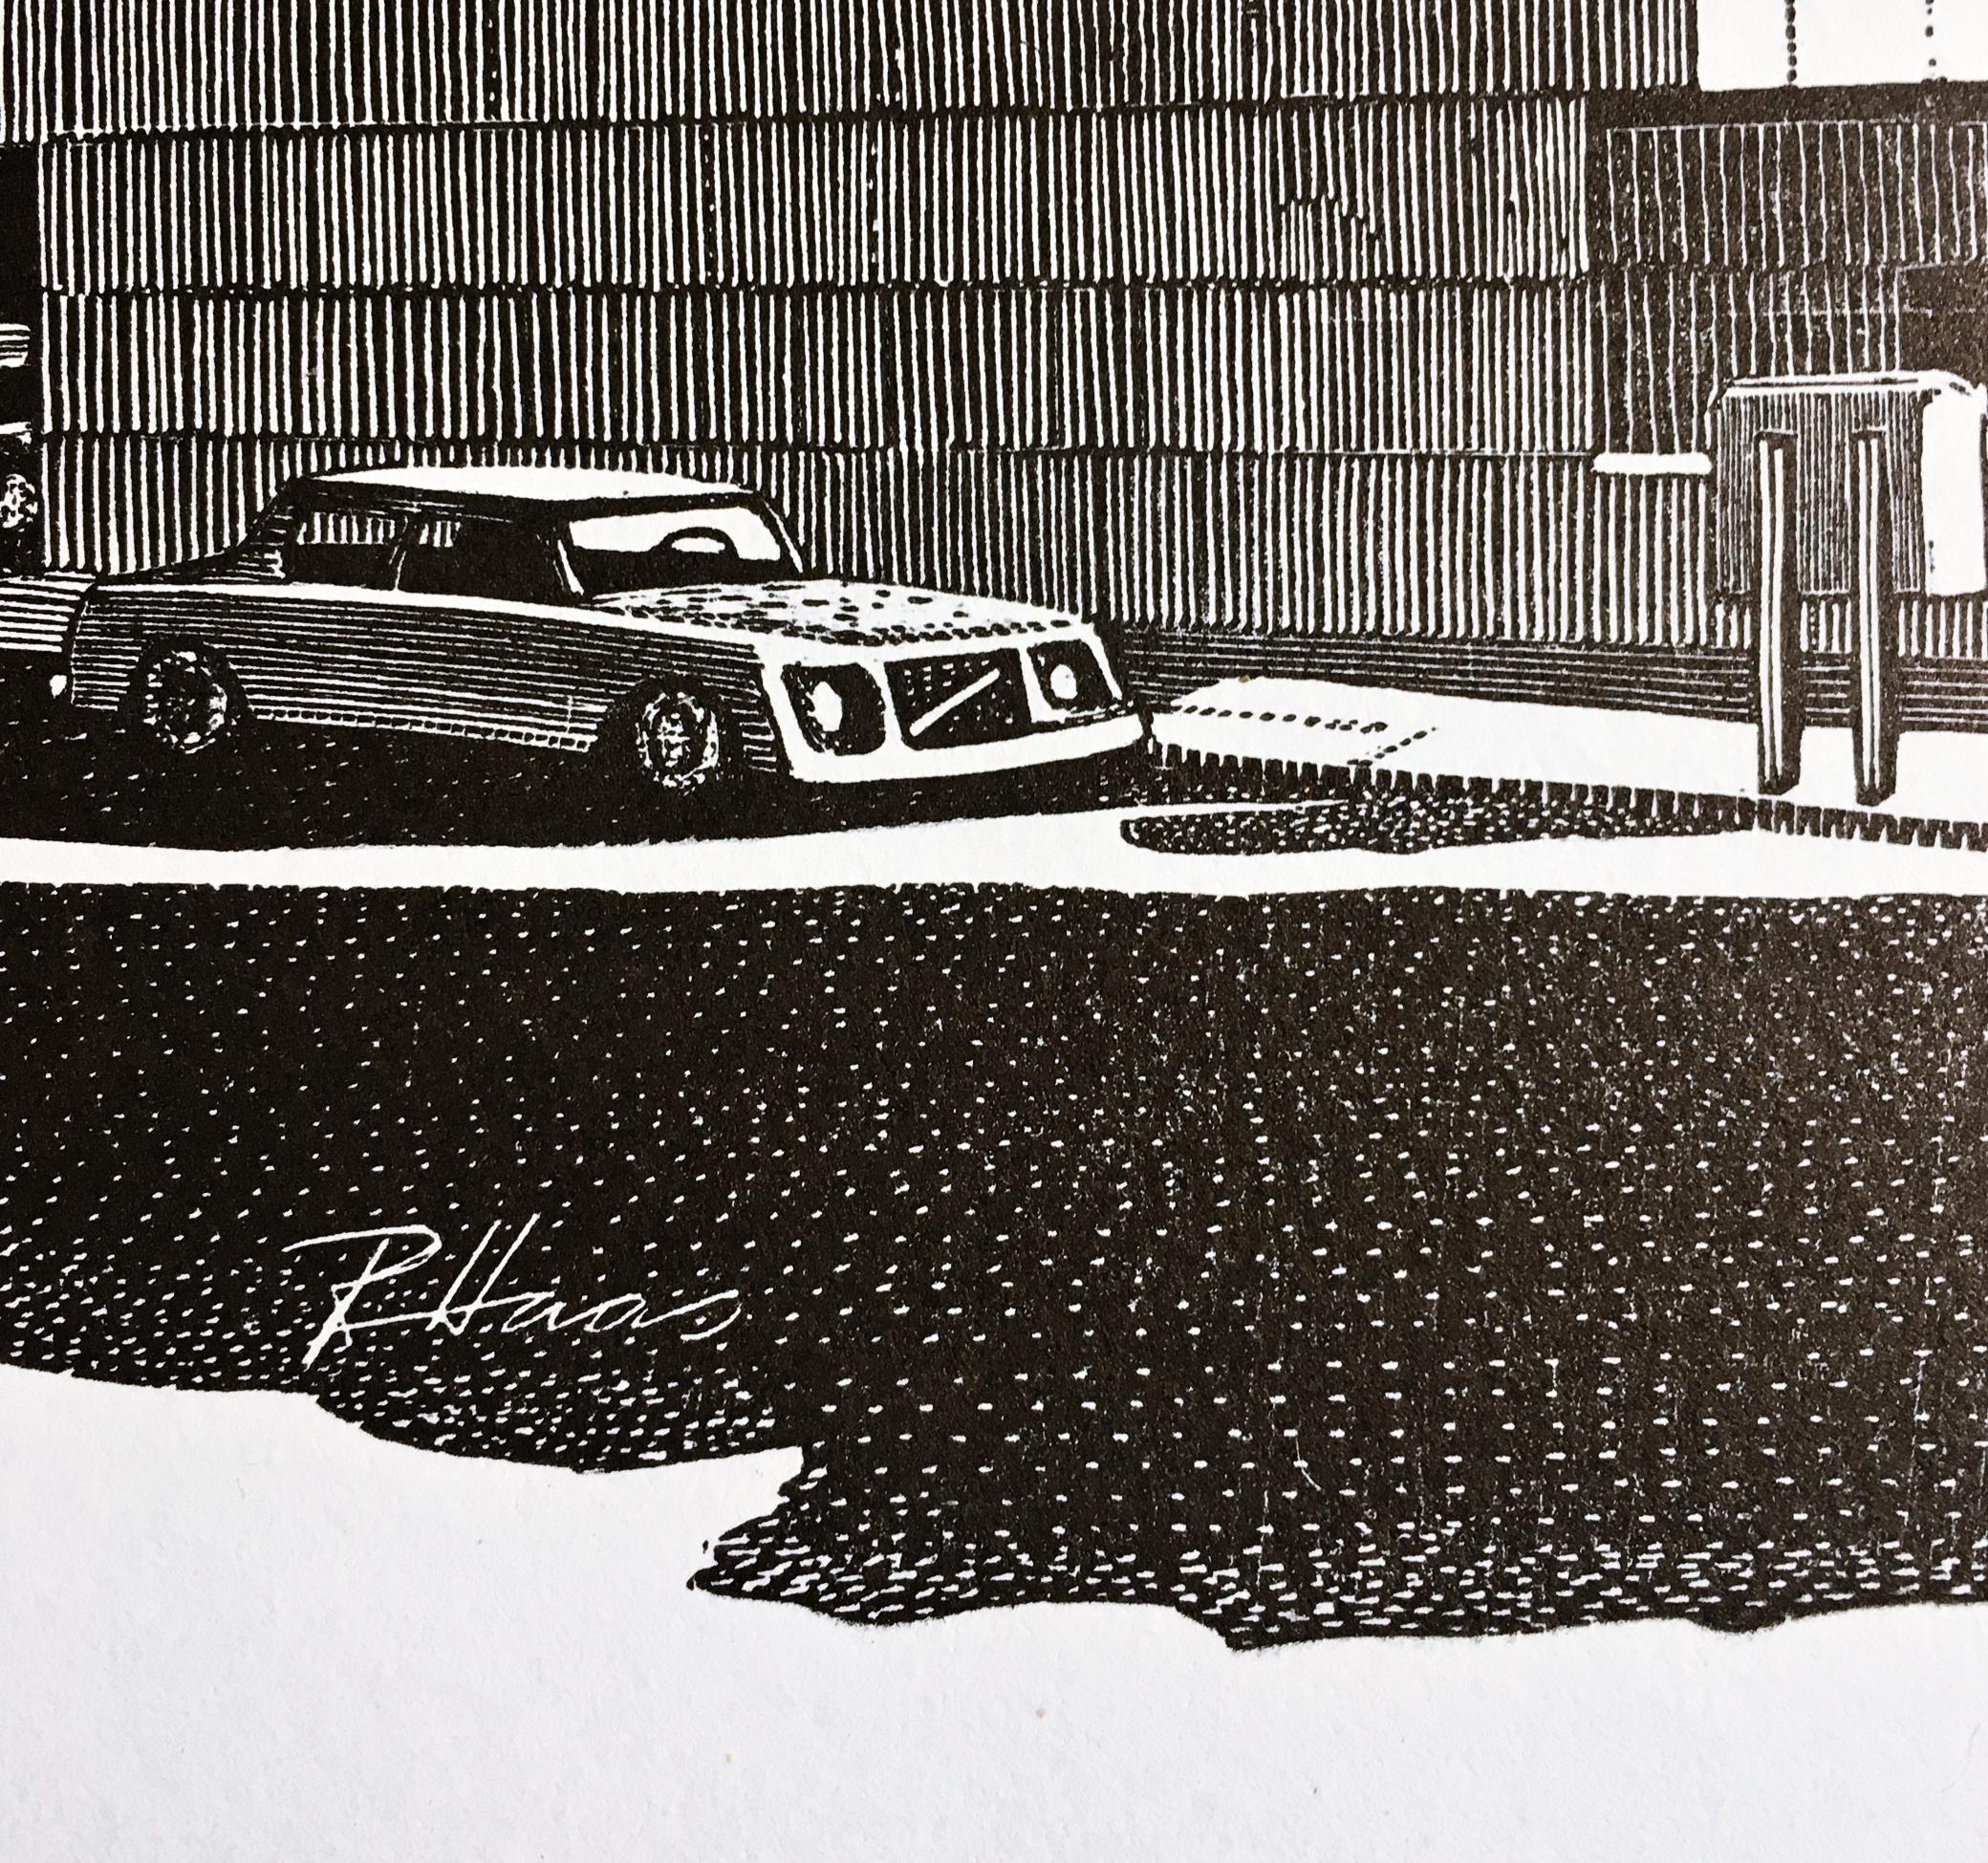 Richard Haas 
Das Whitney (Marcel Breuer Gebäude), 1979
Holzschnitt-Stich
Signiert, betitelt, datiert und nummeriert vom Künstler auf der Rückseite. Dies ist ein seltener Artist Proof 9/10, abgesehen von der regulären Auflage von 60 Stück.
22 3/4 ×